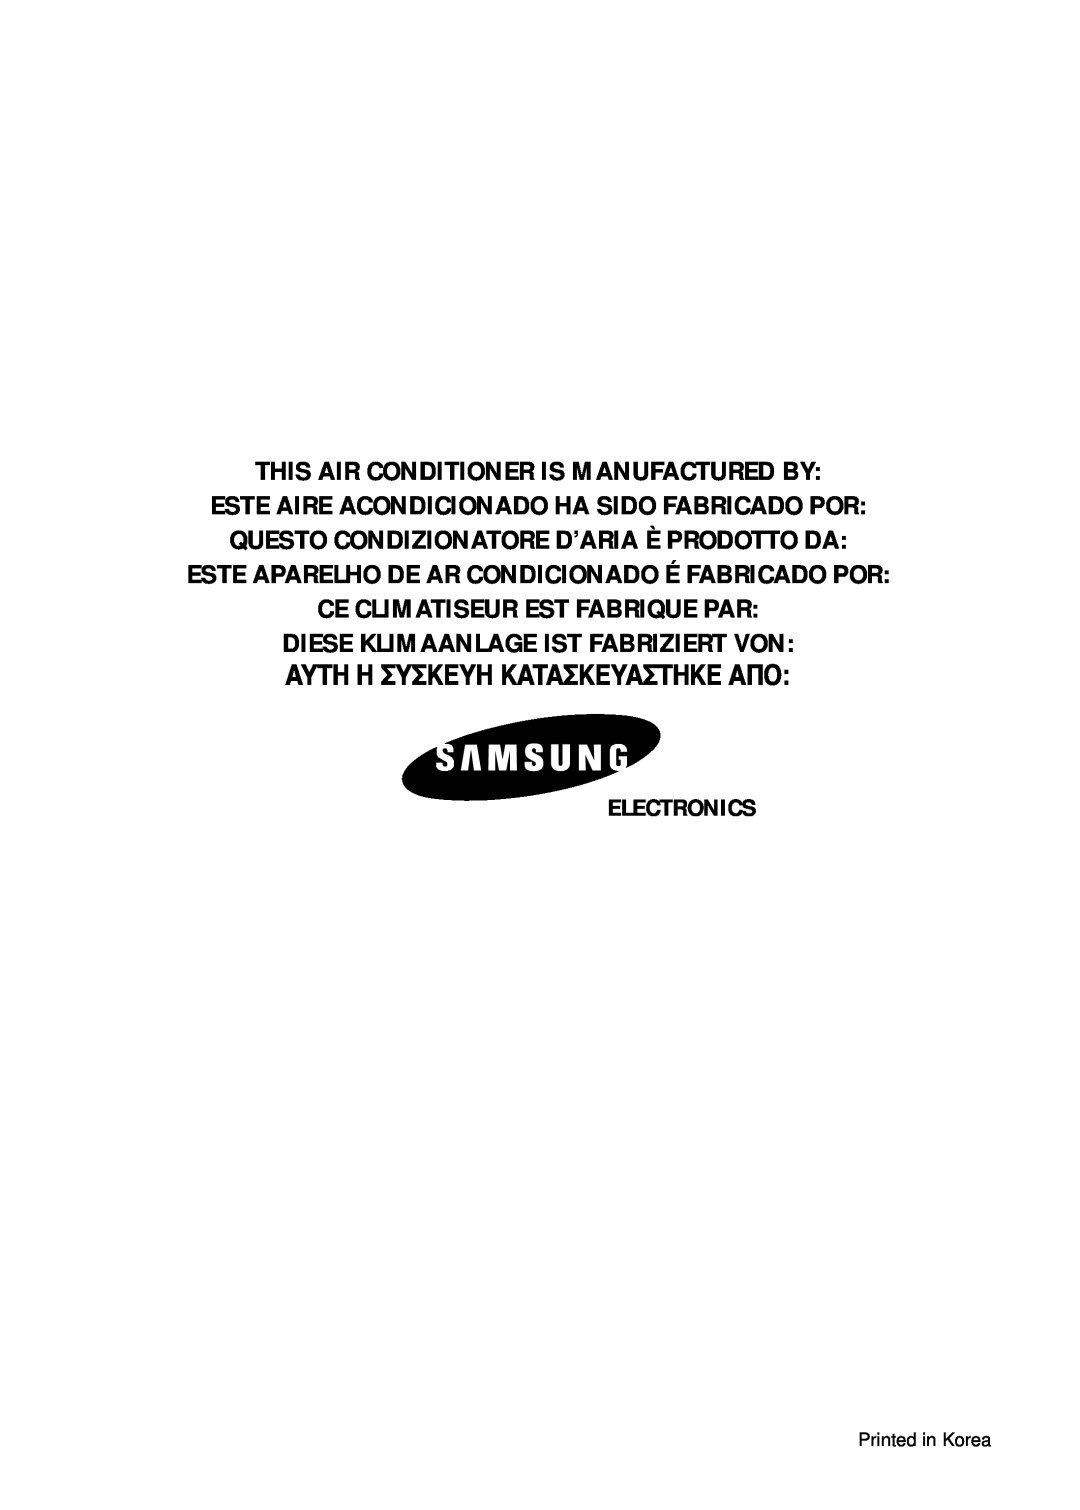 Samsung AS24B1 This Air Conditioner Is Manufactured By, Este Aparelho De Ar Condicionado É Fabricado Por, Electronics 